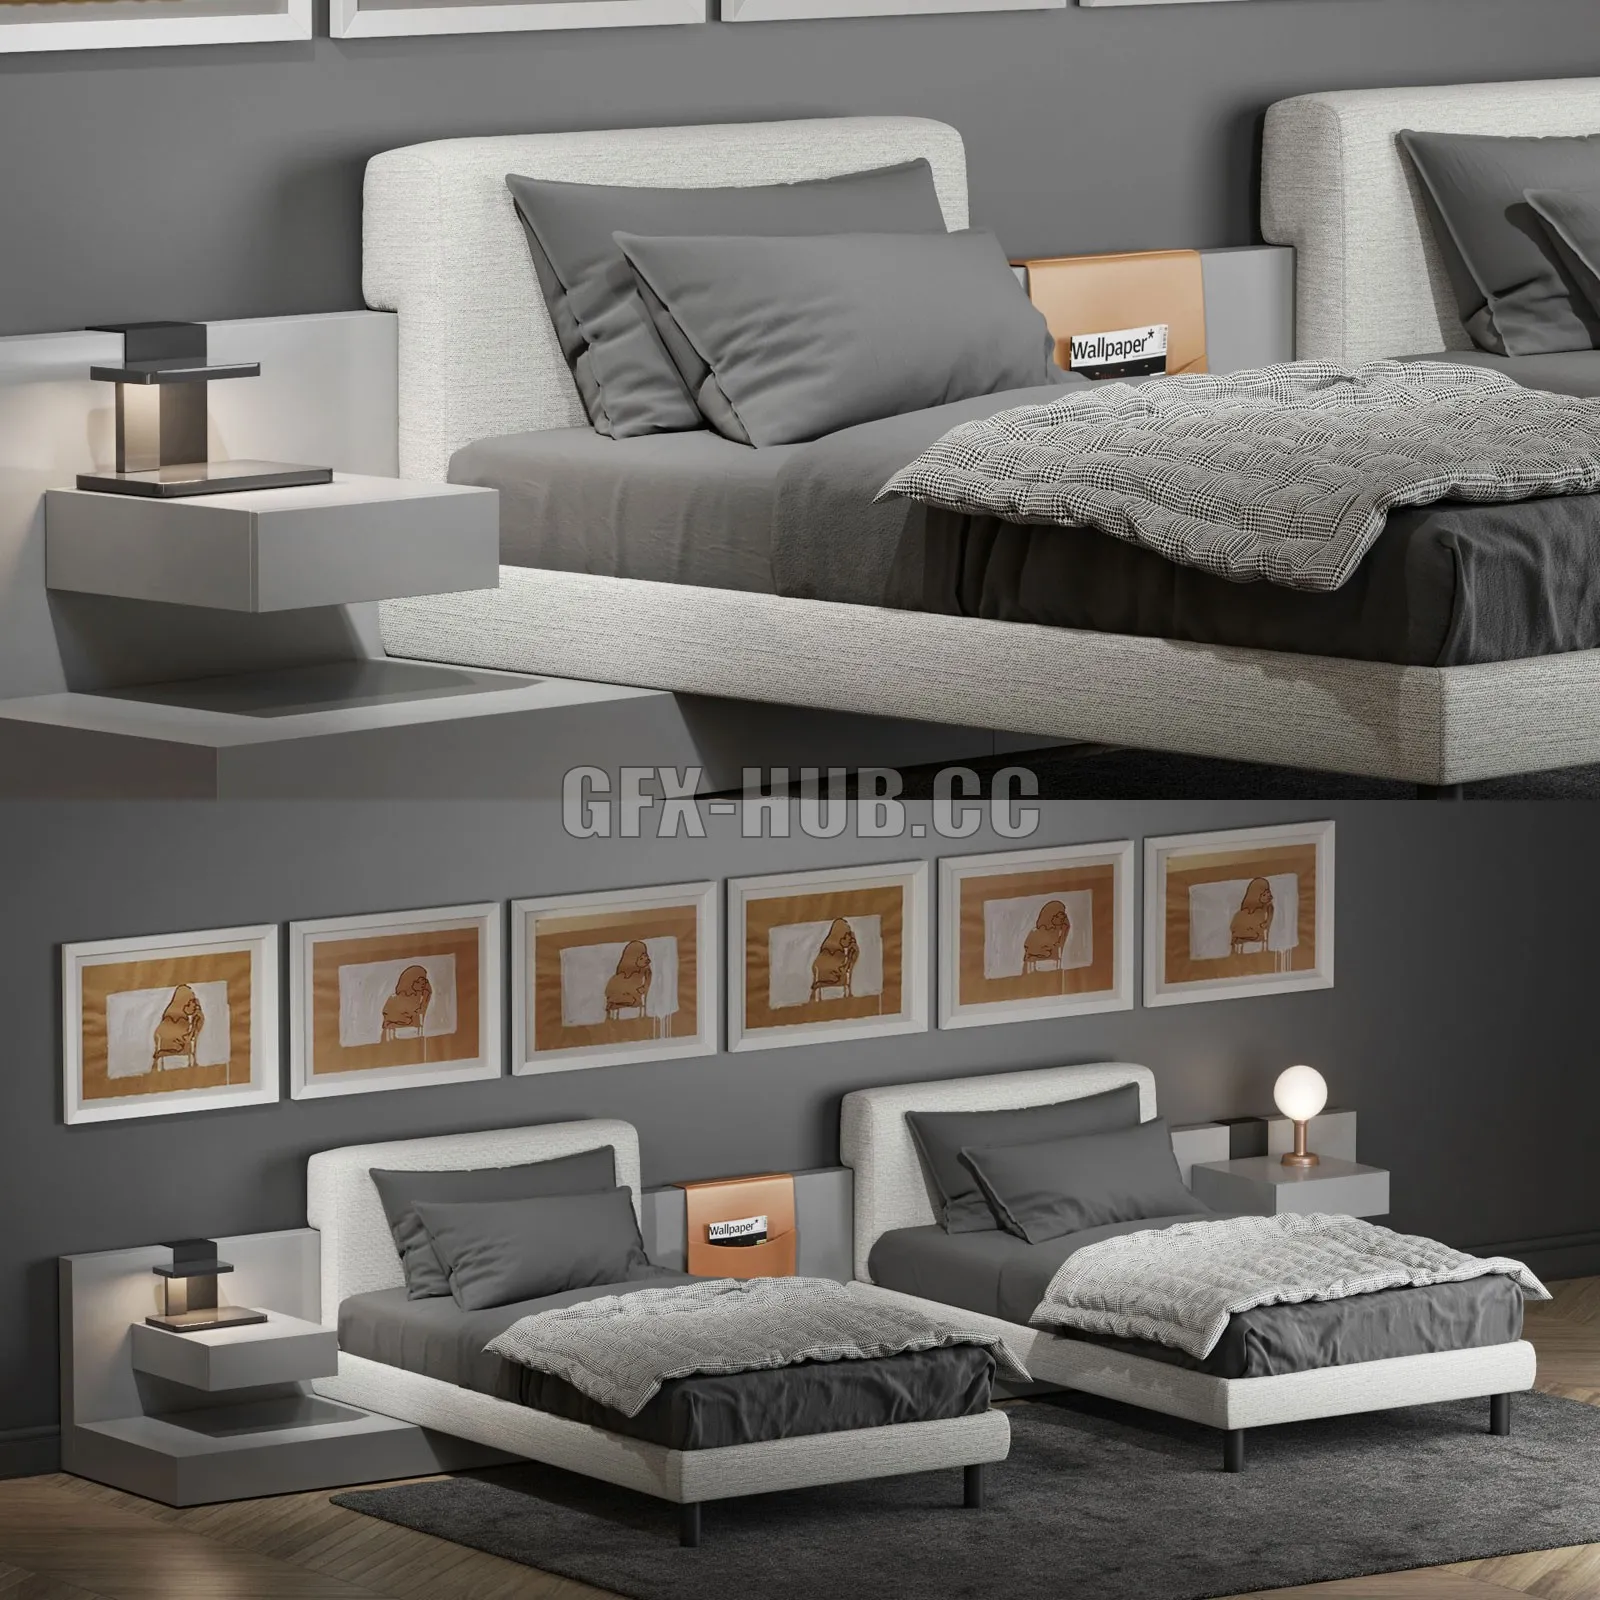 BED – Bed Meridiani Cliff 2 (Andrea Parisio design)